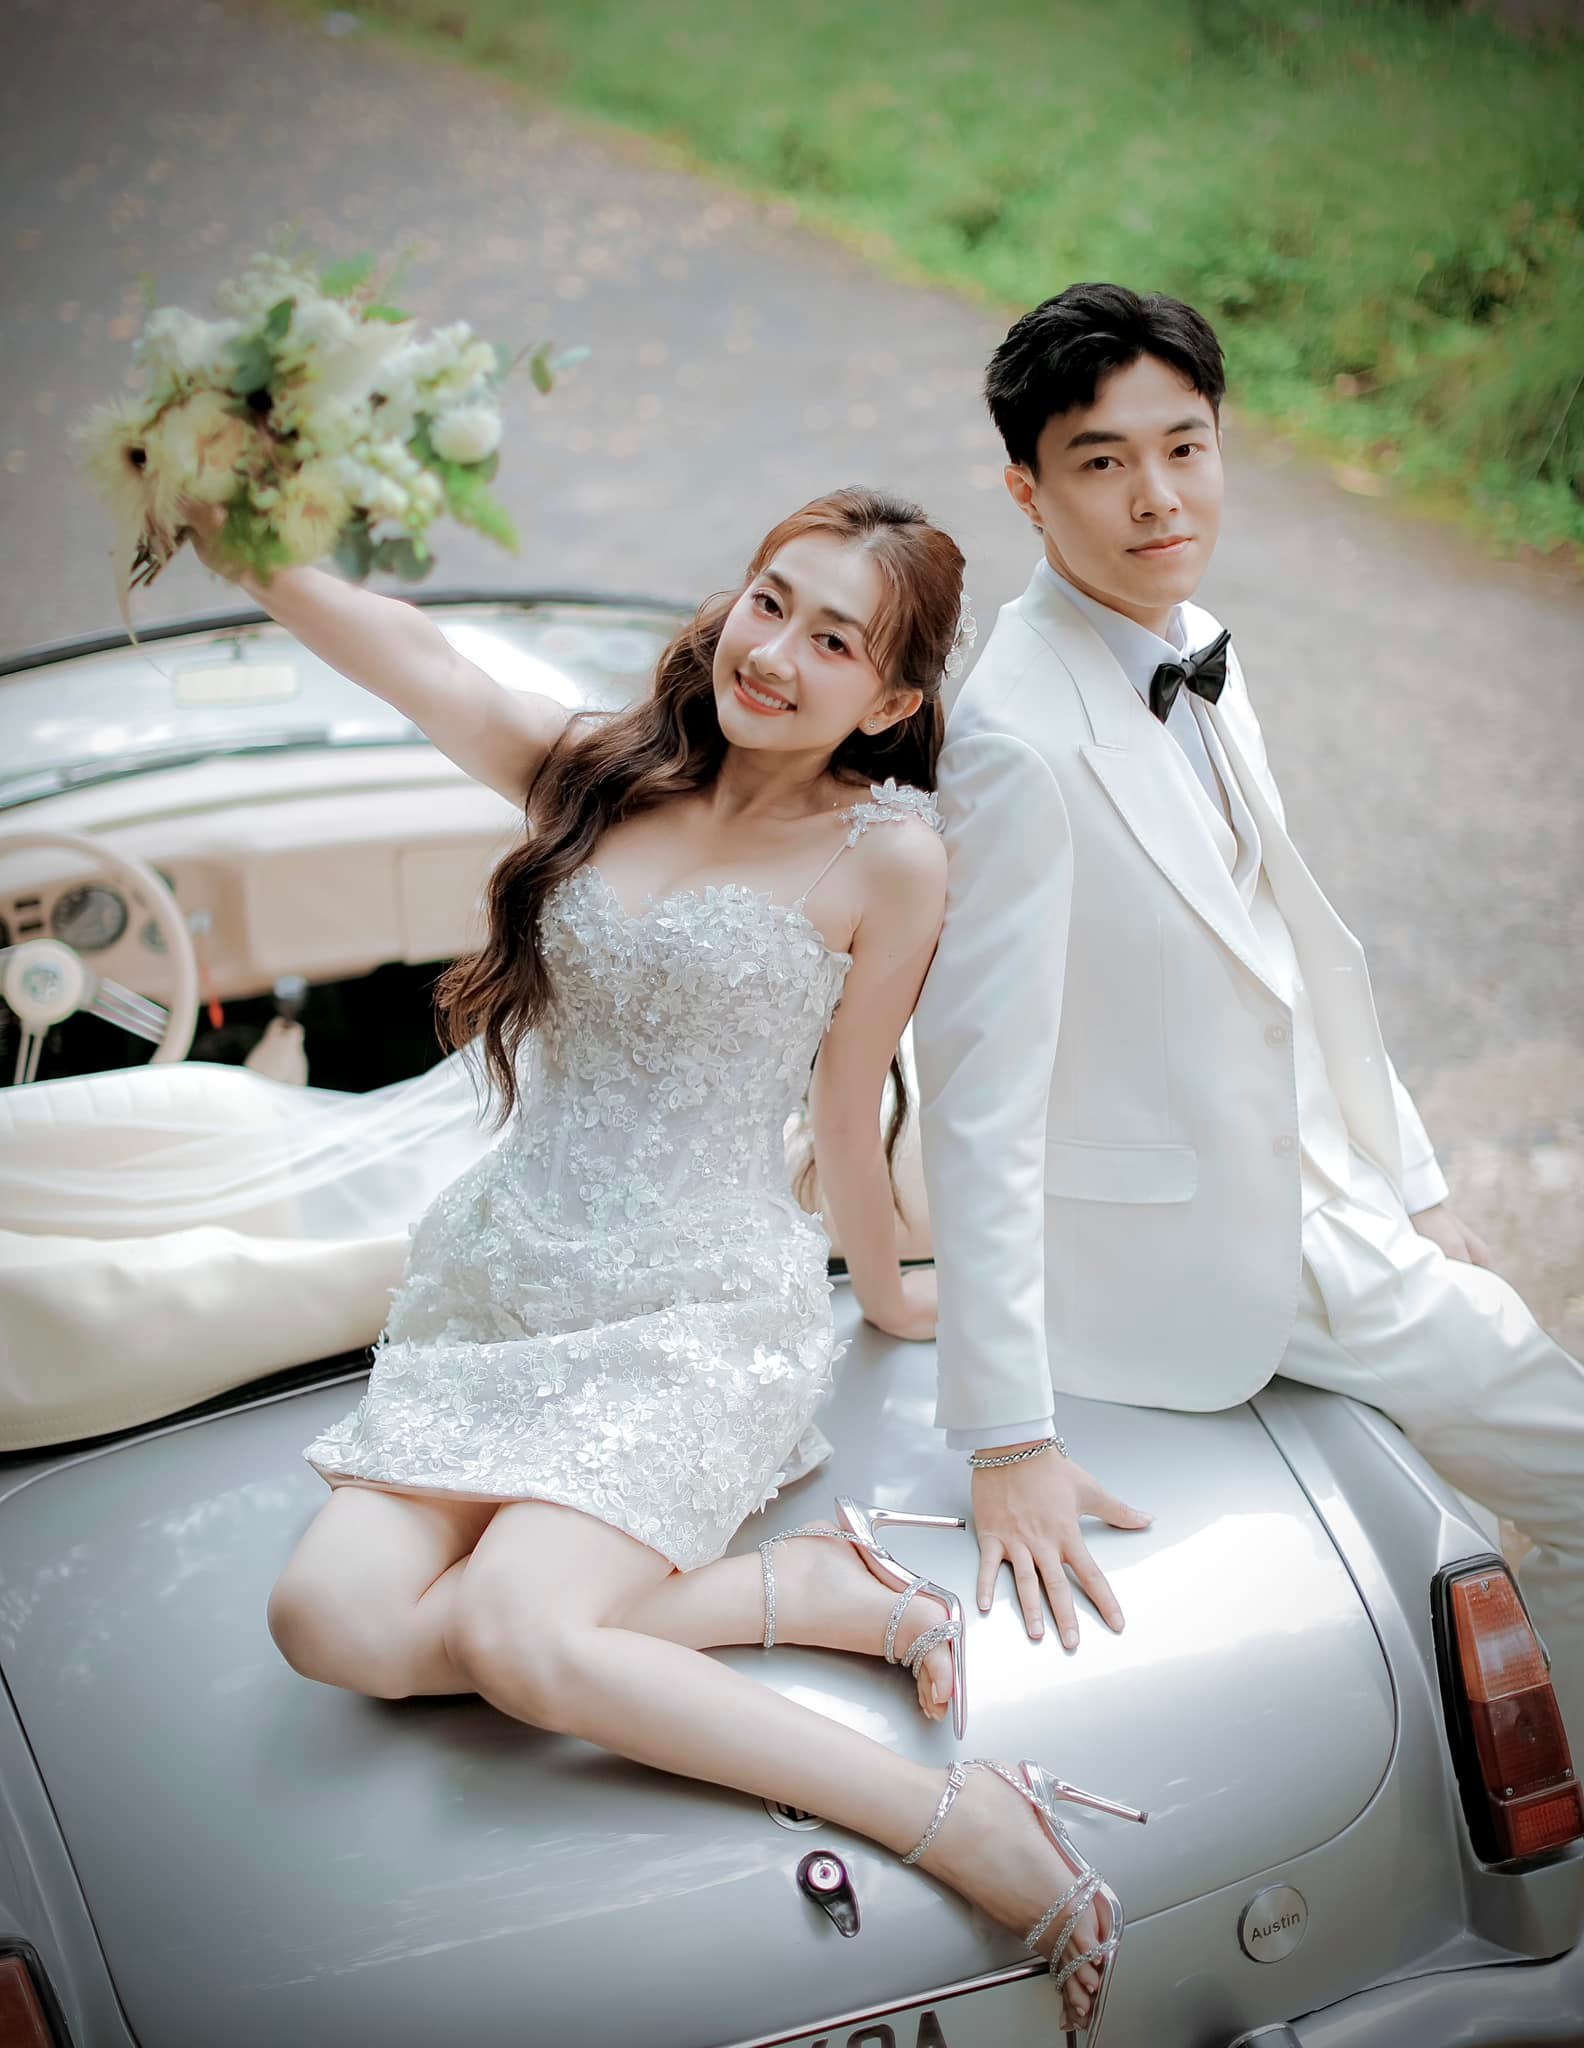 Vừa xong đám cưới Puka, showbiz Việt tiếp tục rộn ràng với hôn lễ của cặp đôi diễn ra ở 3 nơi khác nhau - ảnh 1